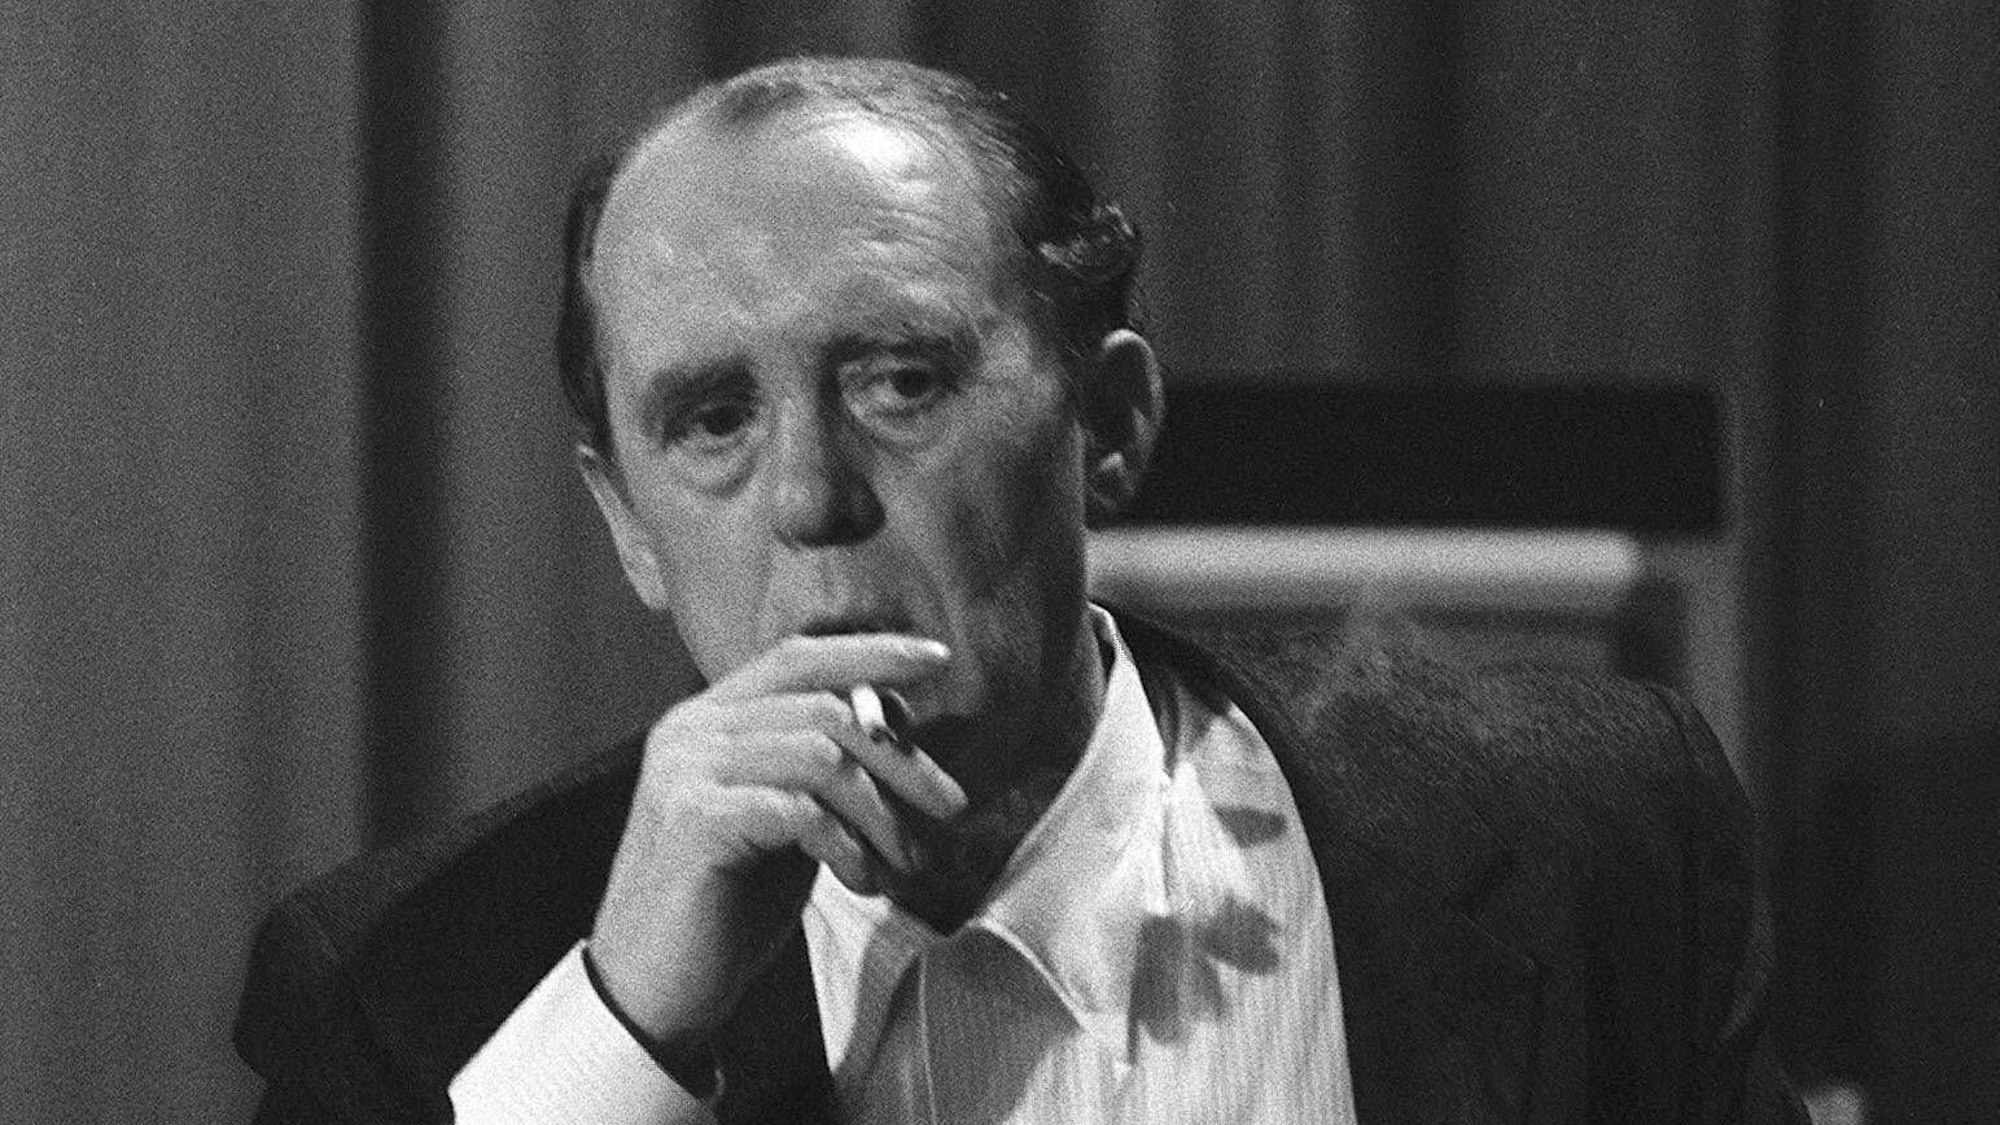 Schriftsteller Heinrich Böll (GER/Nobelpreisträger) rauchend mit einer Zigarette in der Hand während einer Tagung des Schriftstellerverbandes P.E.N.